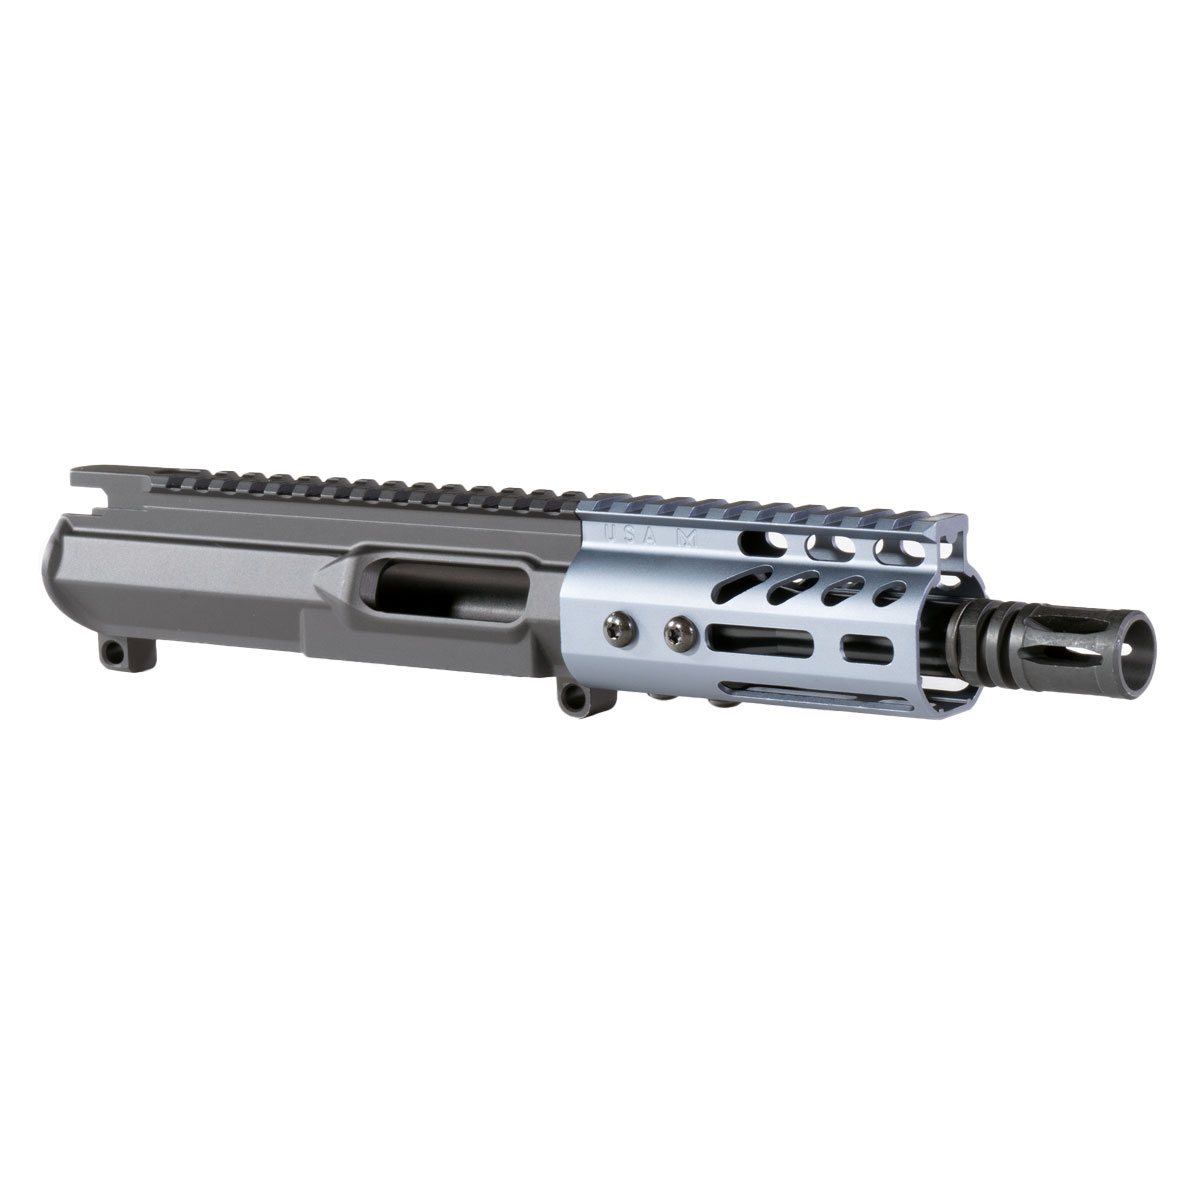 DTT 'Garmsil' 5.5-inch AR-15 10mm Nitride Pistol Upper Build Kit